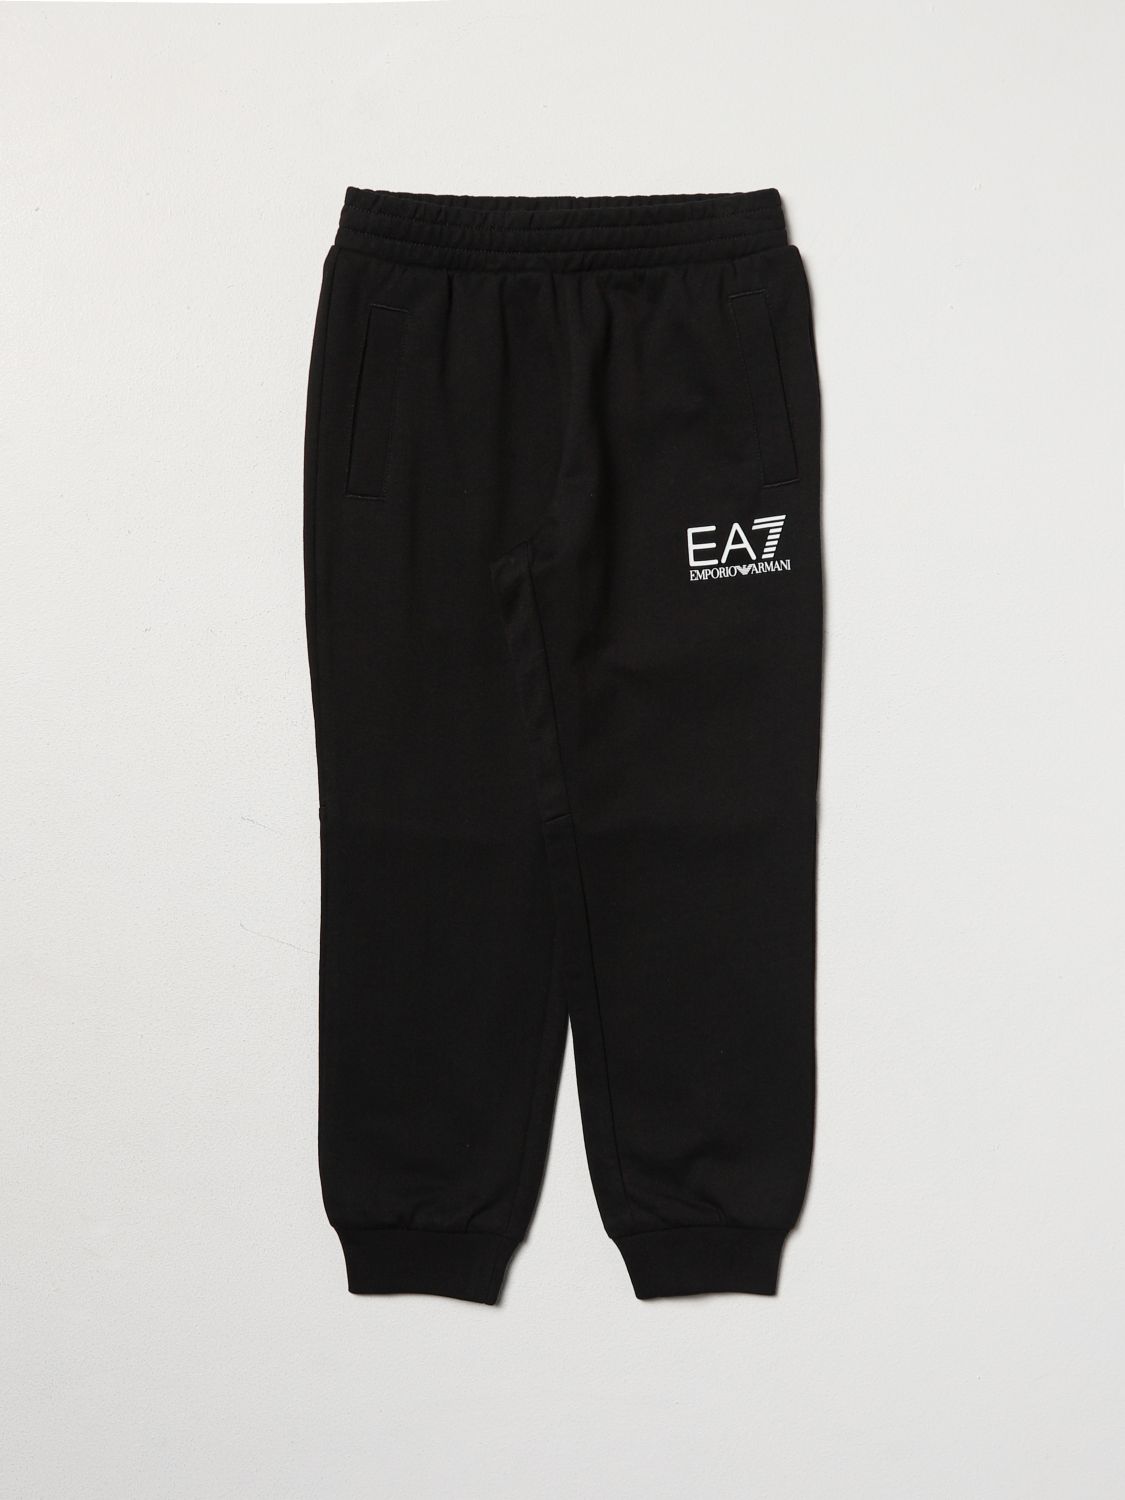 Ea7 Trousers  Kids In Black